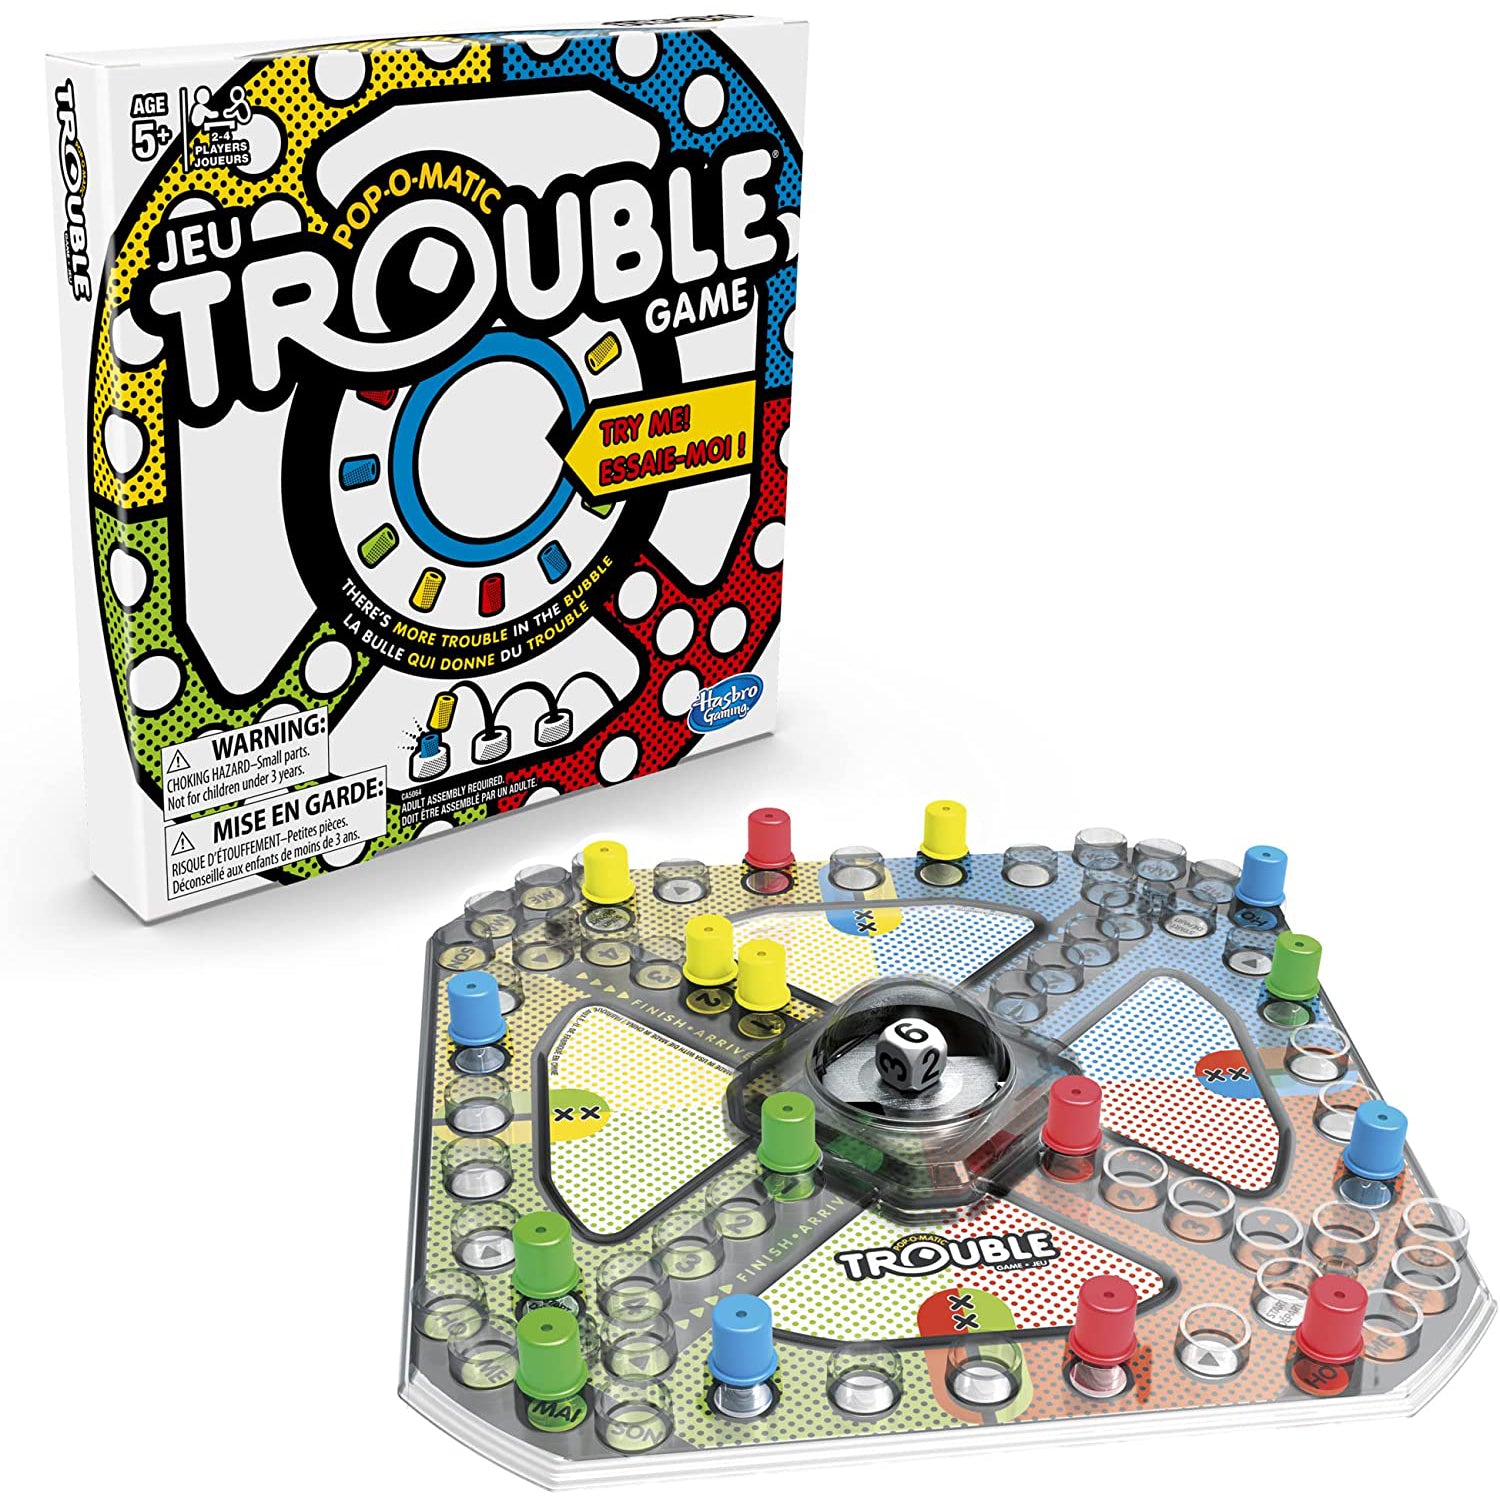 Hasbro Trouble Board Game